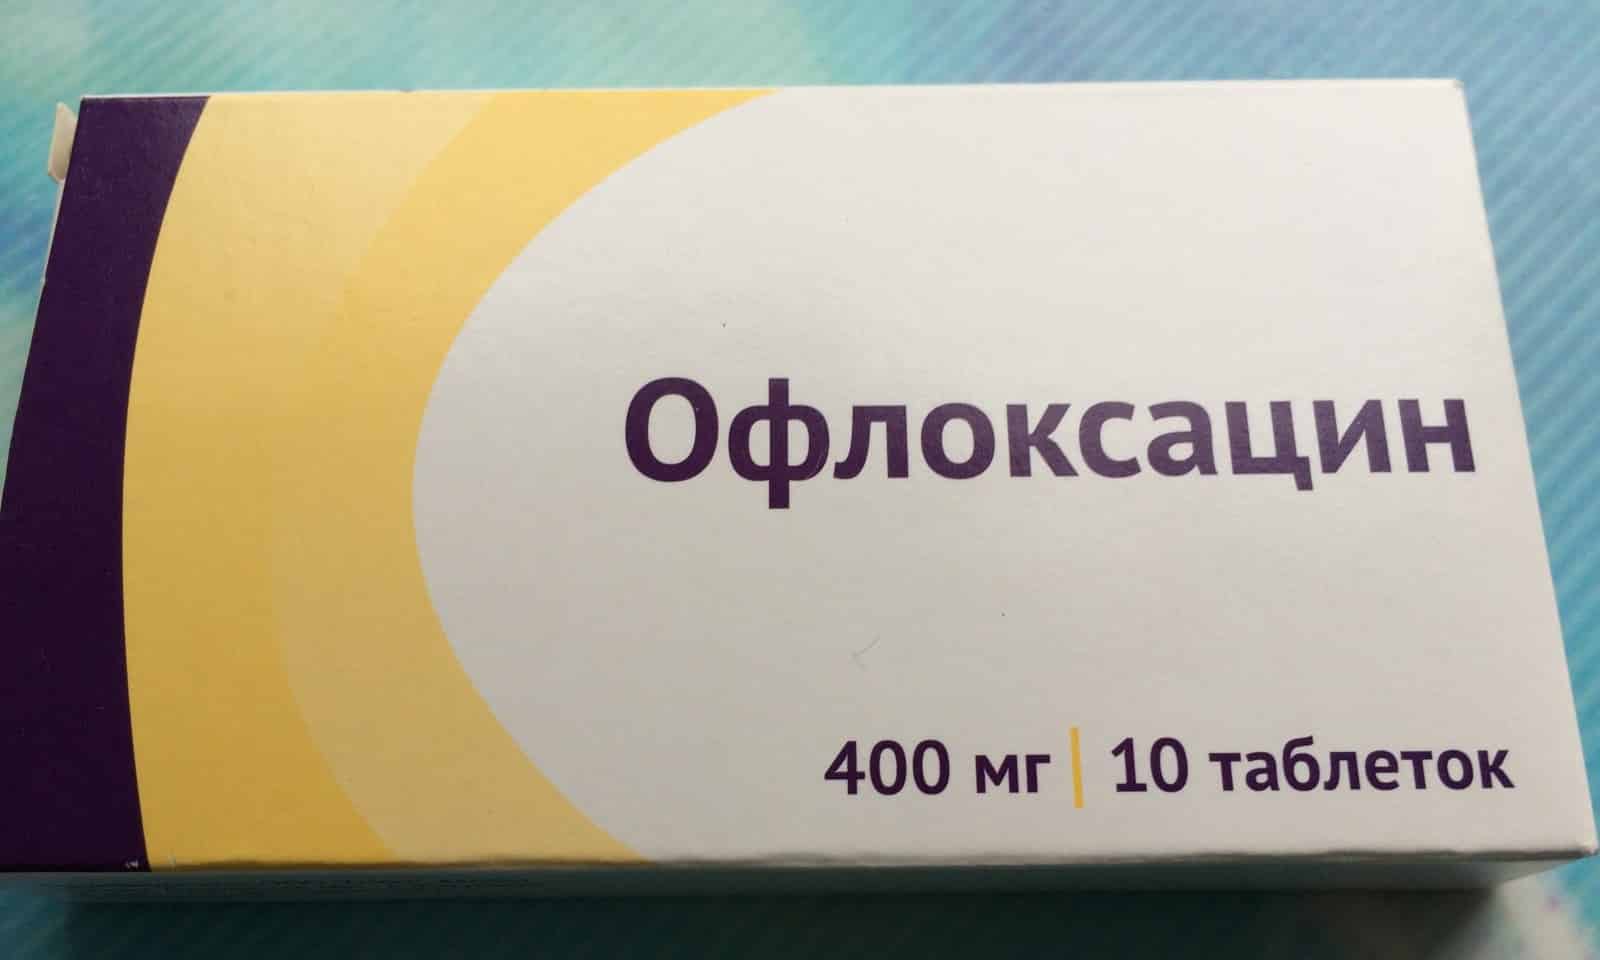 8889 ІФІЦИПРО® - Ciprofloxacin